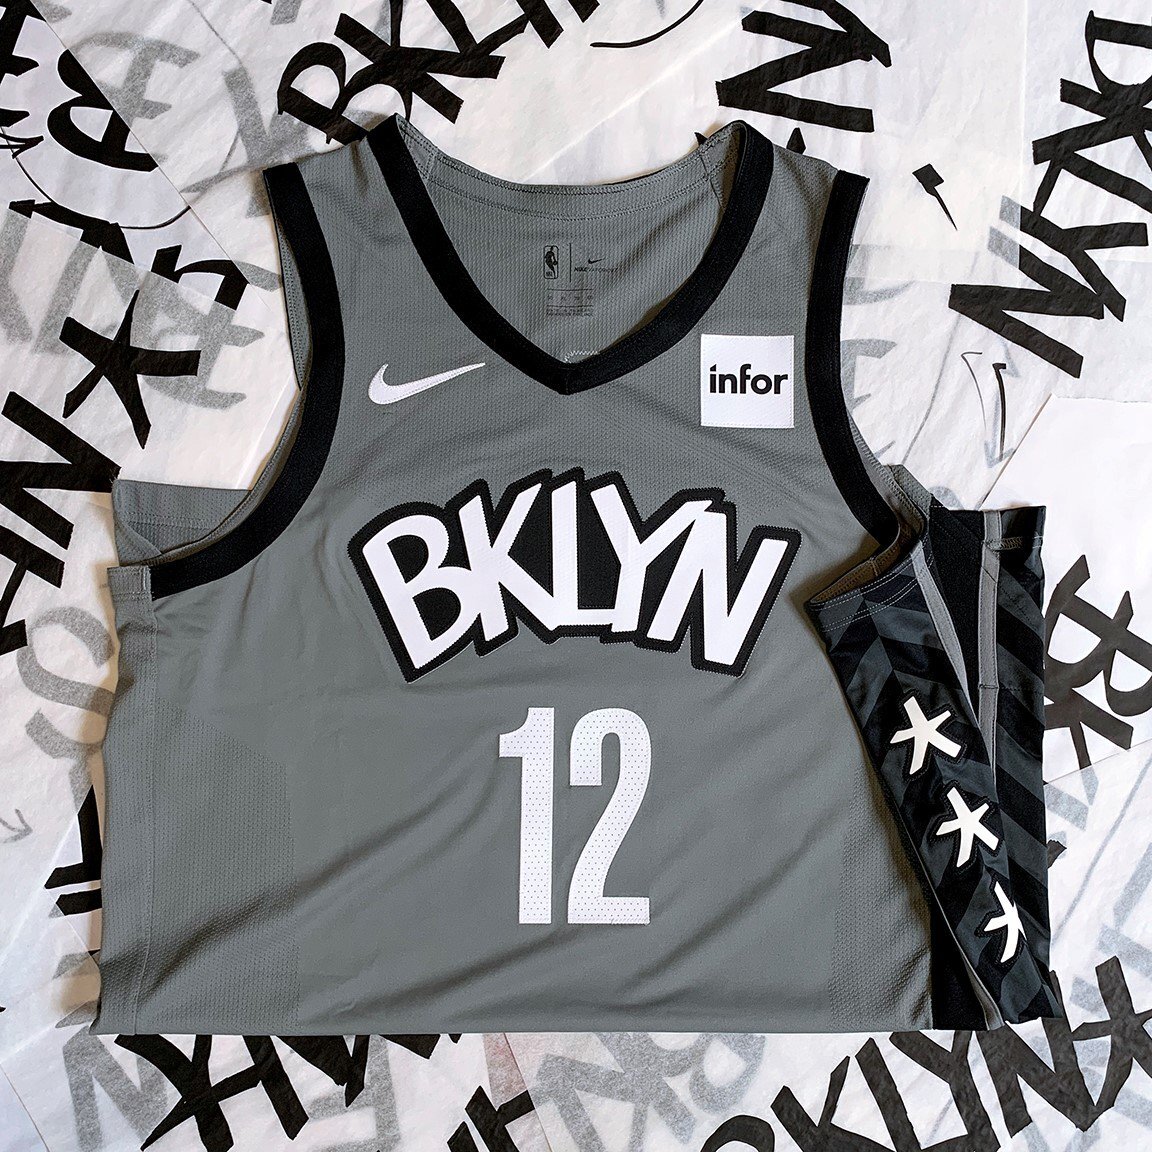 Brooklyn Nets Jerseys & Gear.